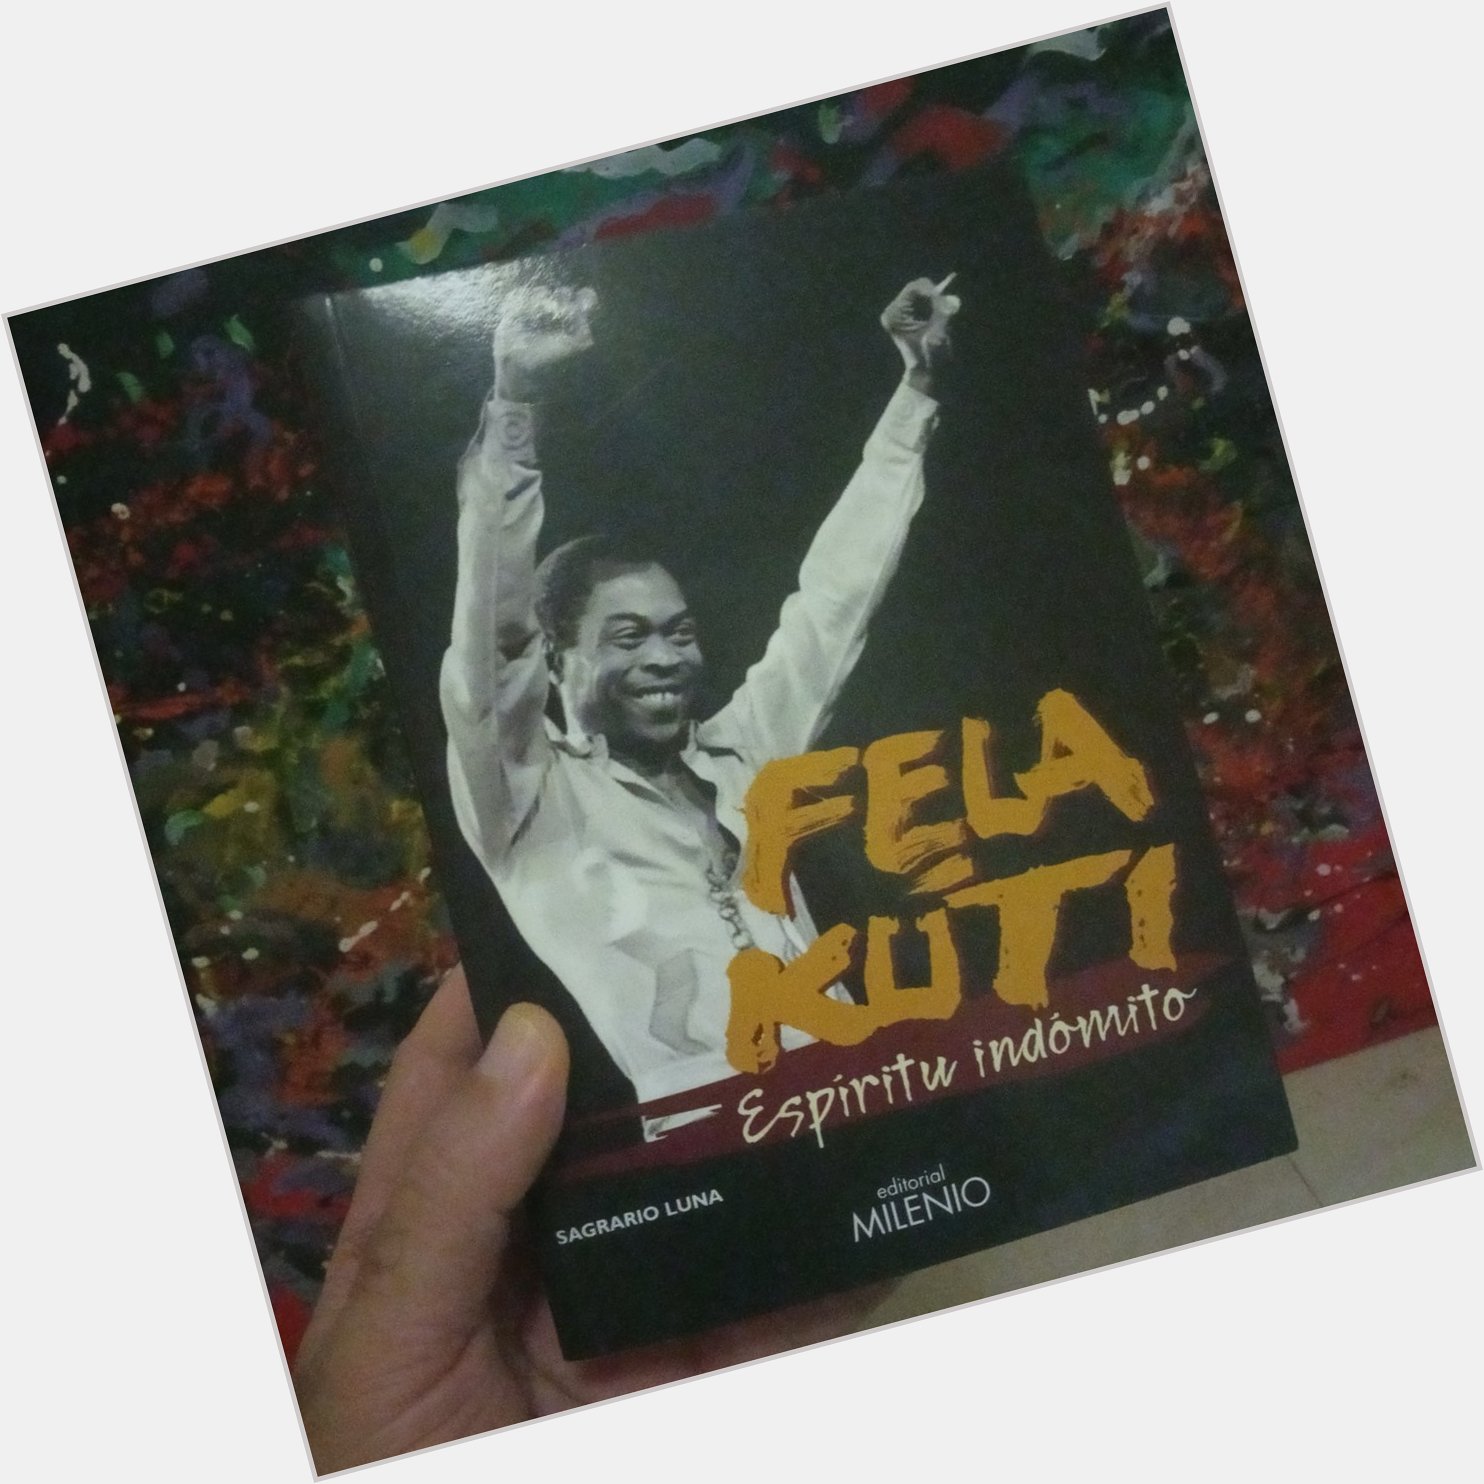 Happy birthday to the mighty Fela Kuti!!   